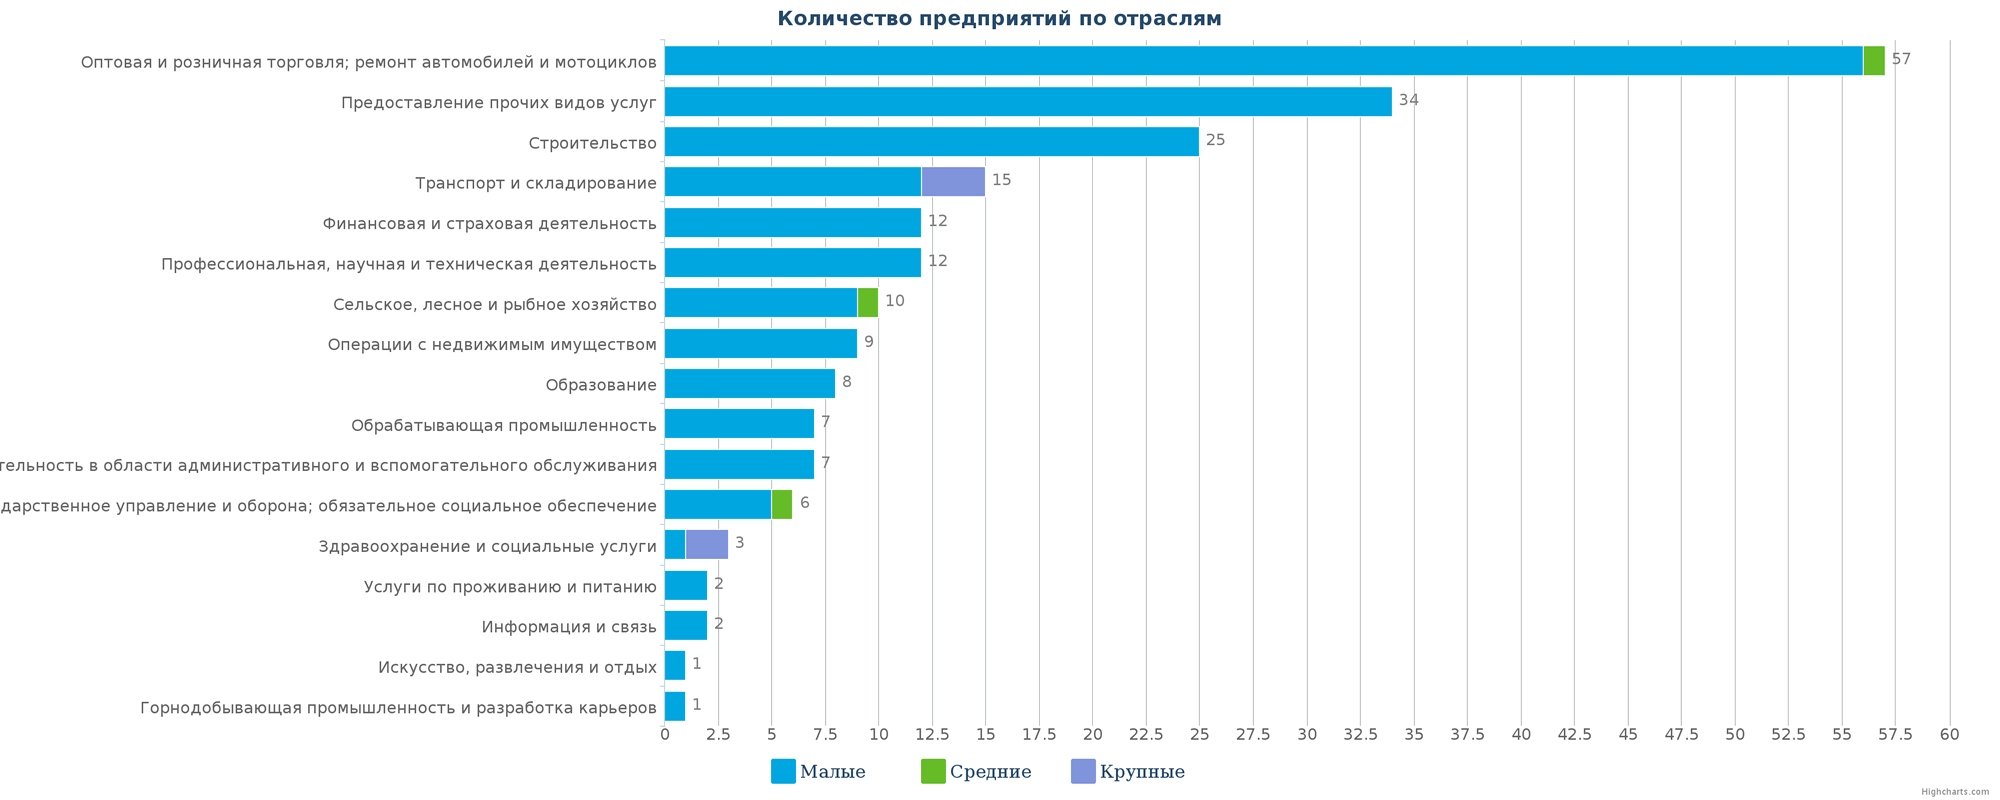 Количество ликвидированных организаций в реестре Казахстана по отраслям